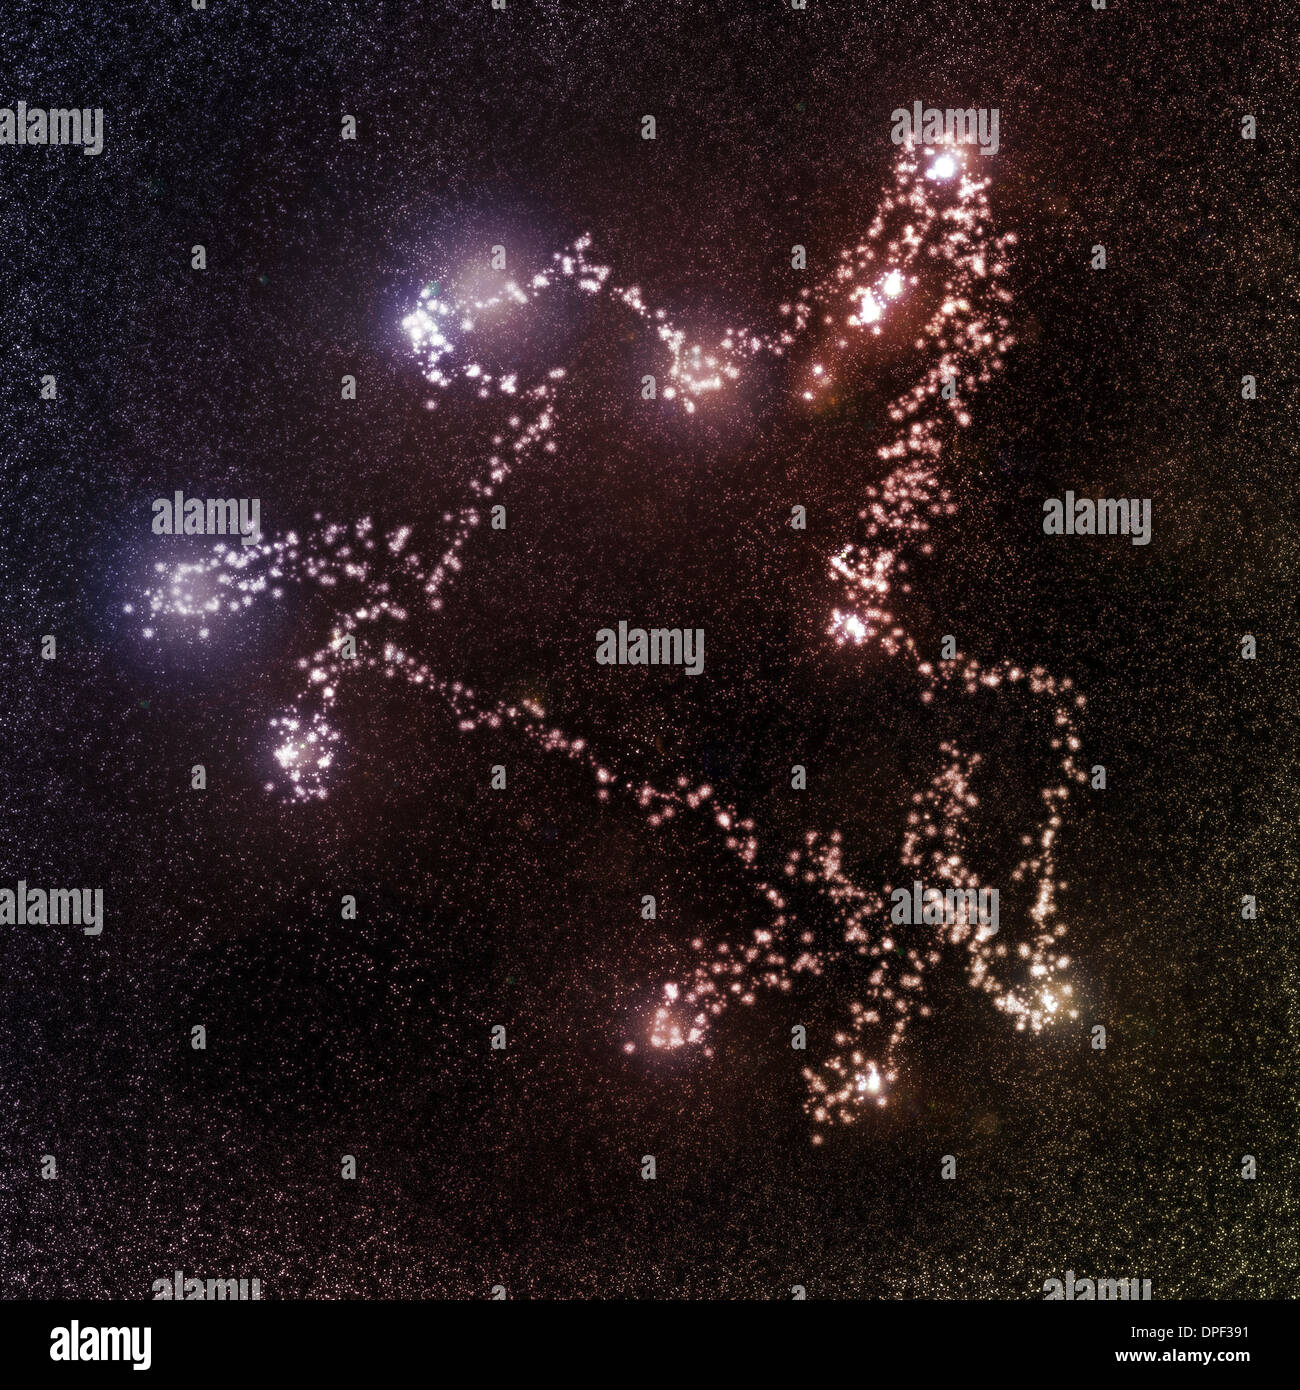 Ilustración del caballo alado estrellado espacio ultraterrestre galaxy Foto de stock